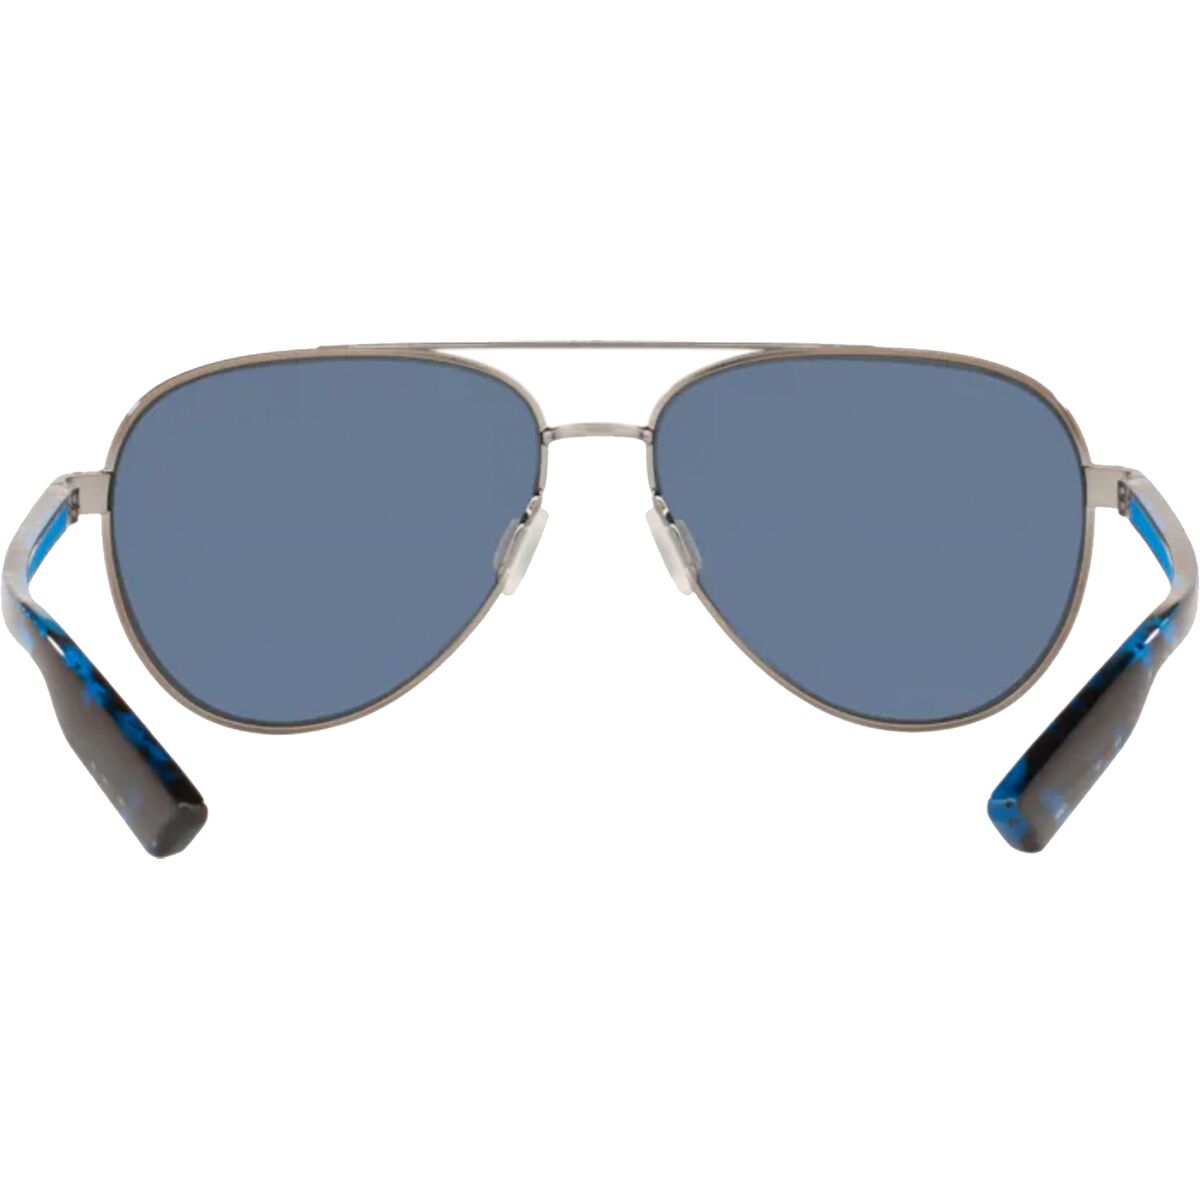 Поляризованные солнцезащитные очки Peli 580P Costa